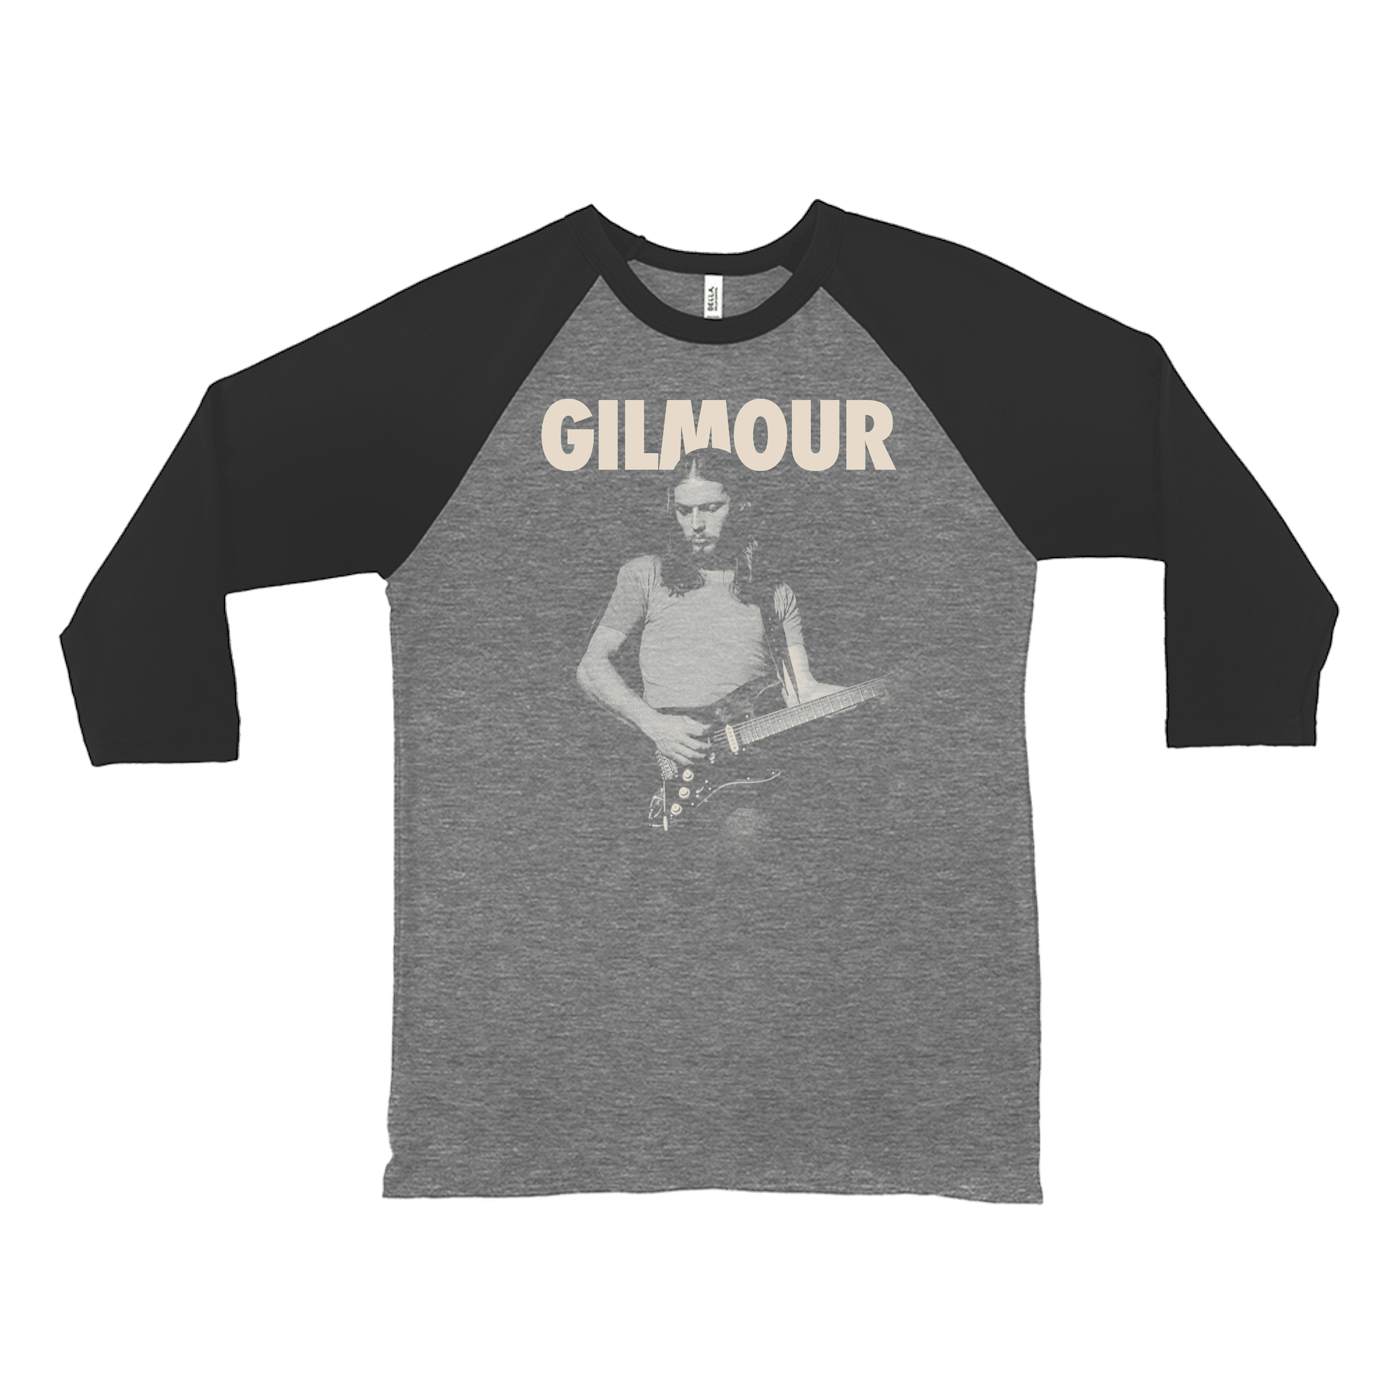 David Gilmour 3/4 Sleeve Baseball Tee | Young David Gilmour an Bold Logo David Gilmour Shirt